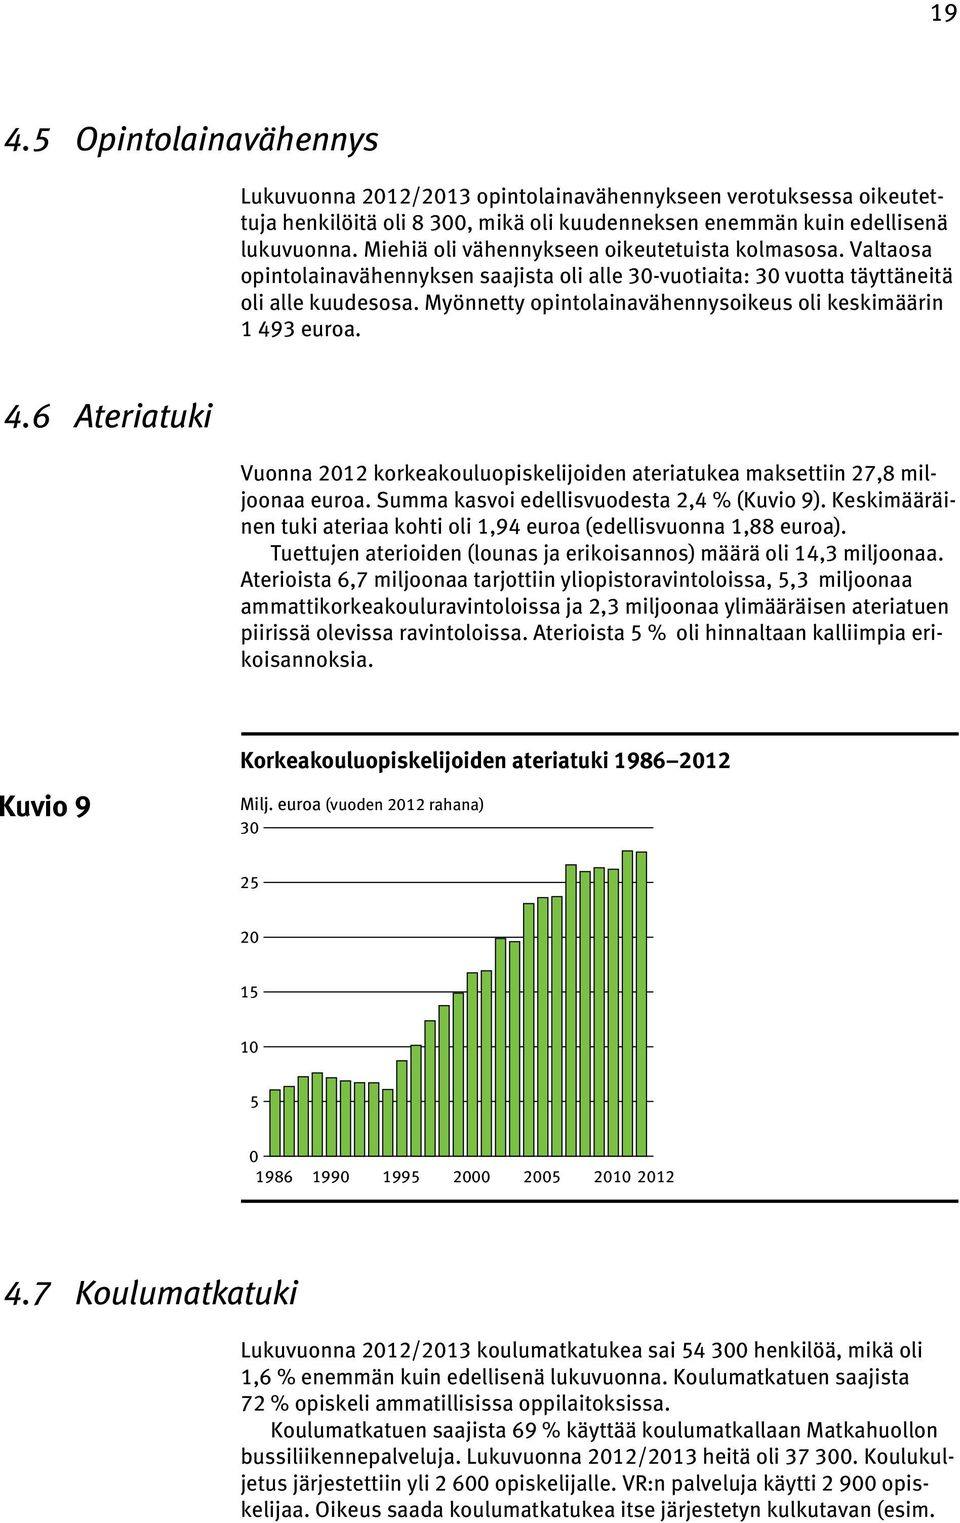 Myönnetty opintolainavähennysoikeus oli keskimäärin 1 493 euroa. 4.6 Ateriatuki Vuonna 2012 korkeakouluopiskelijoiden ateriatukea maksettiin 27,8 miljoonaa euroa.